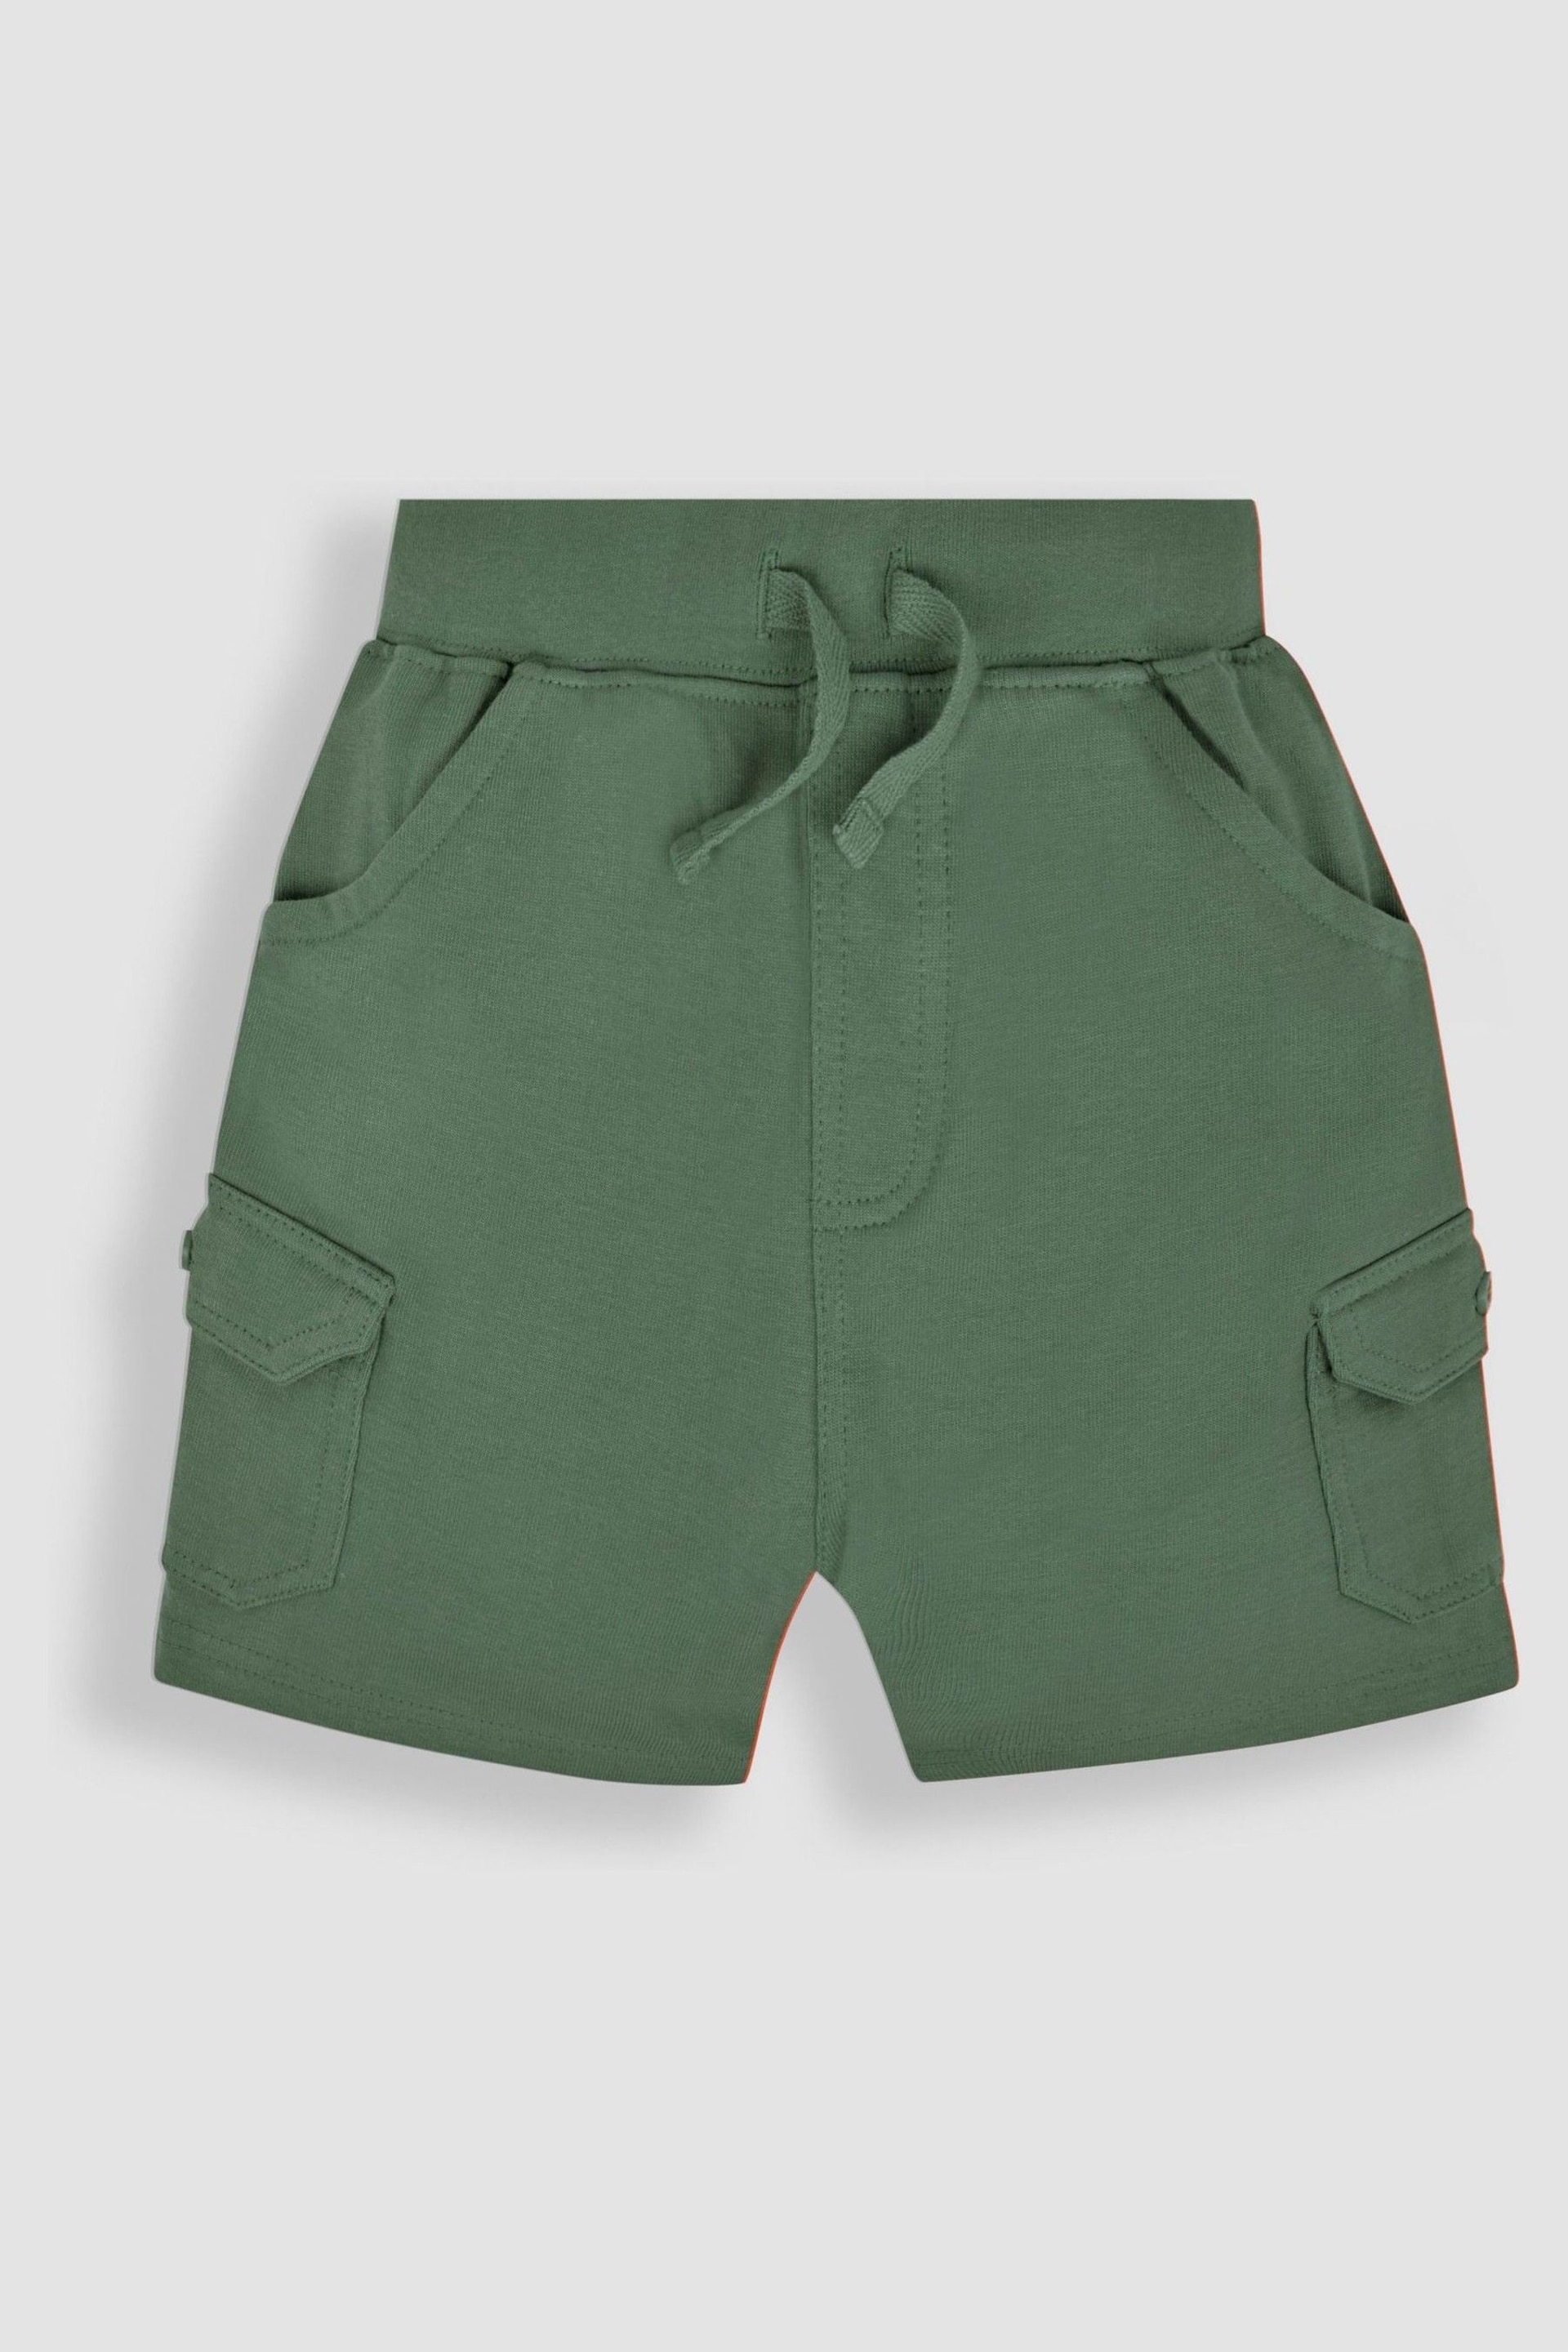 JoJo Maman Bébé Khaki Green 2-Pack Jersey Cargo Shorts - Image 2 of 7